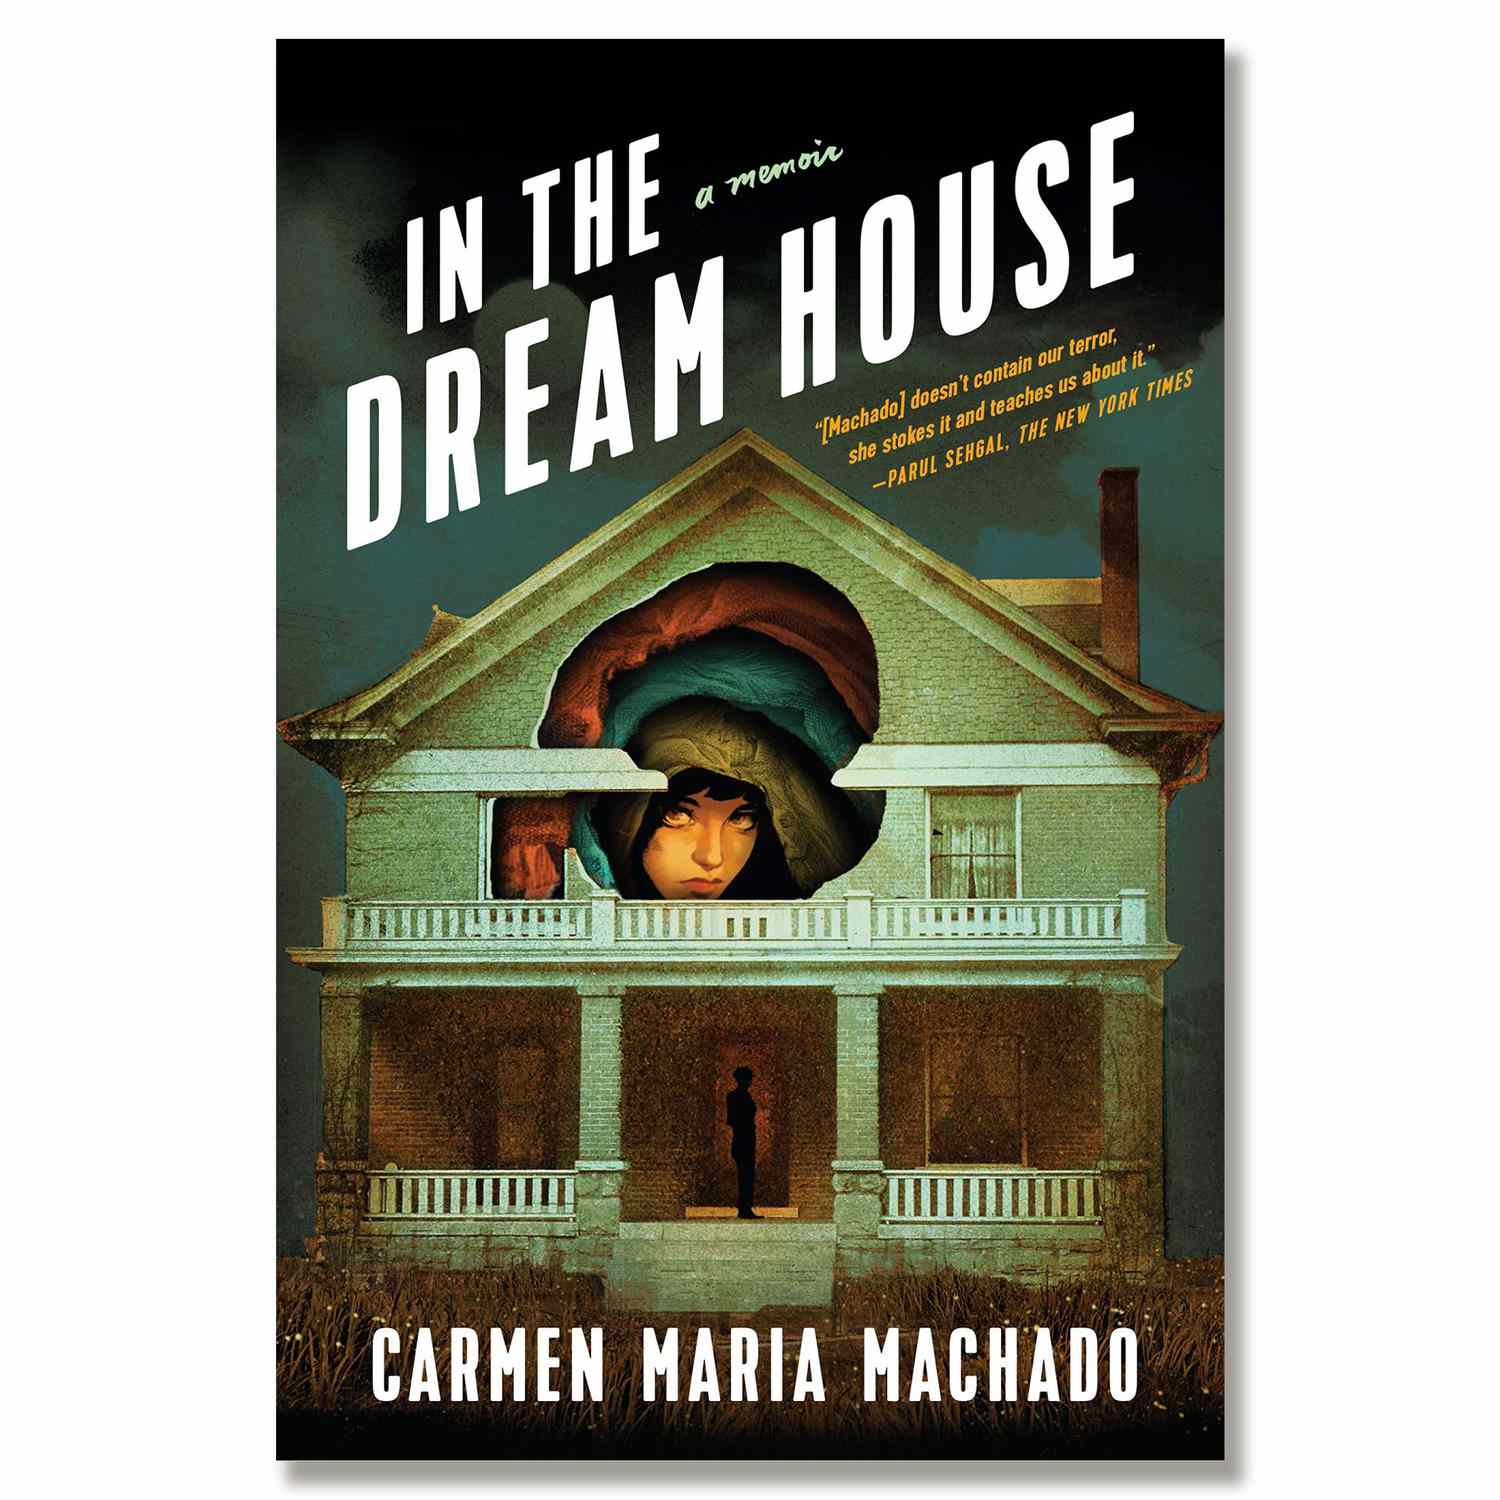 In-The-Dream-House-Carmen-Maria-Machado